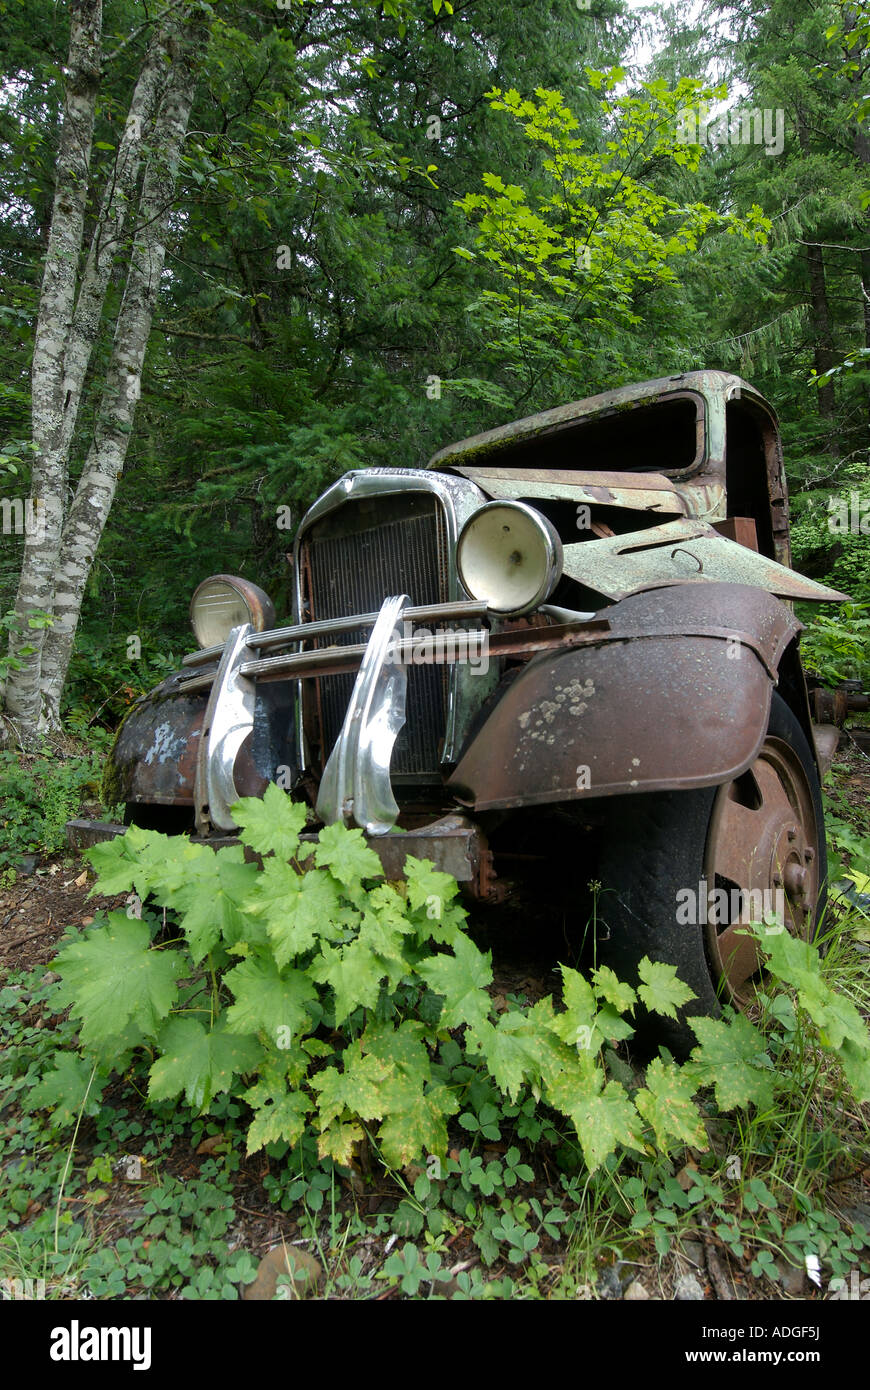 Viejos vehículos abandonados es reclamada por el bosque lentamente Foto de stock